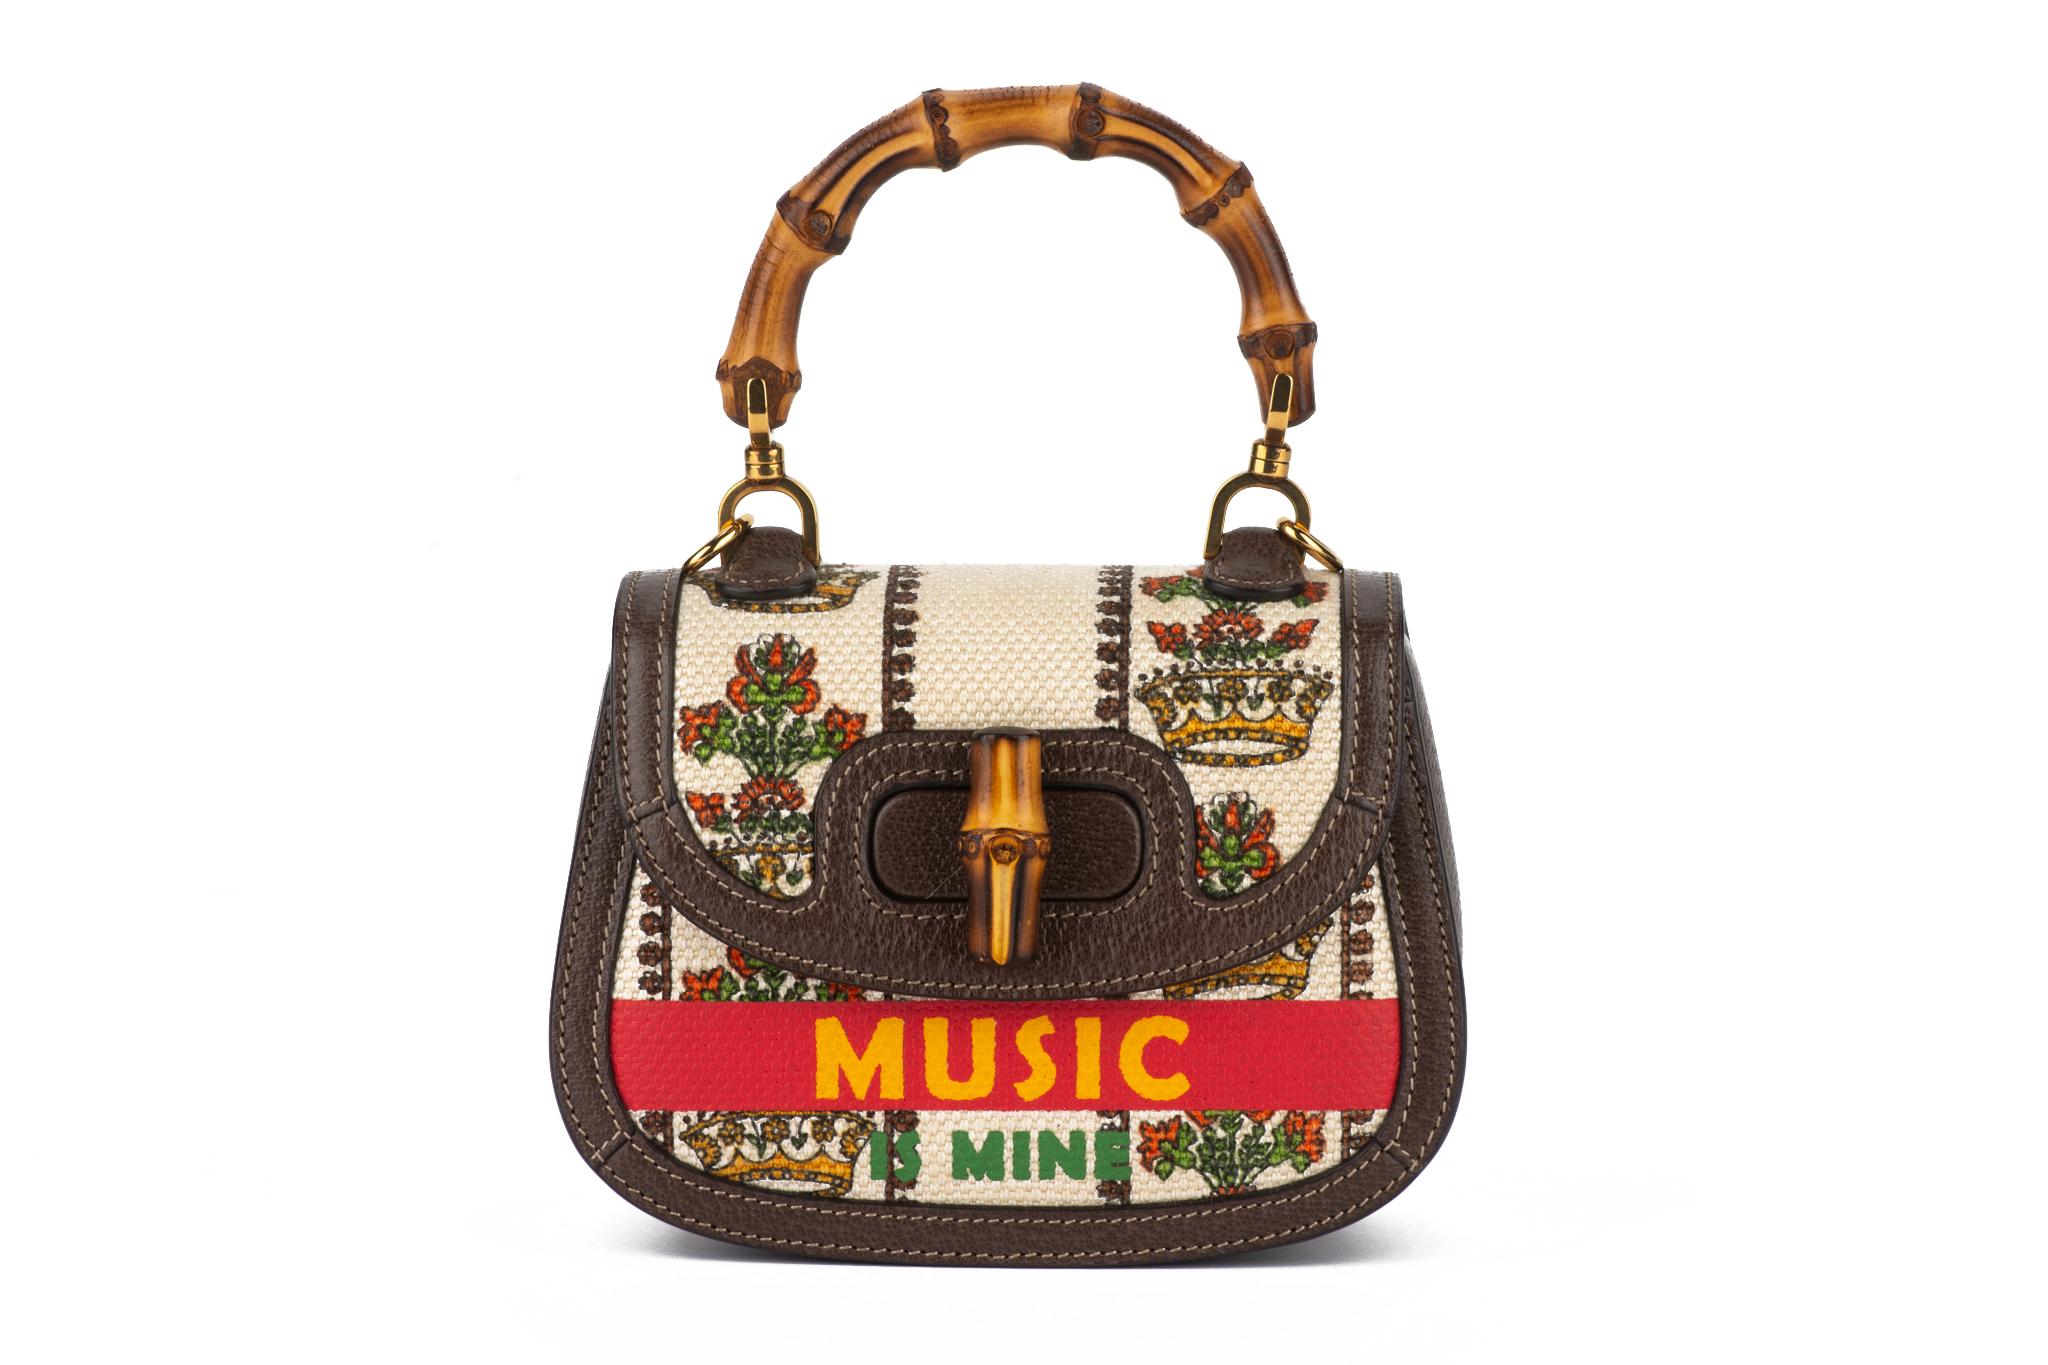 Gucci neue limitierte Auflage 100 Jahrestag Musik Mini-Bambus 1947 Tasche. Bedrucktes Segeltuch und schokoladenfarbene Lederdetails, ikonische Bambusdetails .
Griffhöhe 3